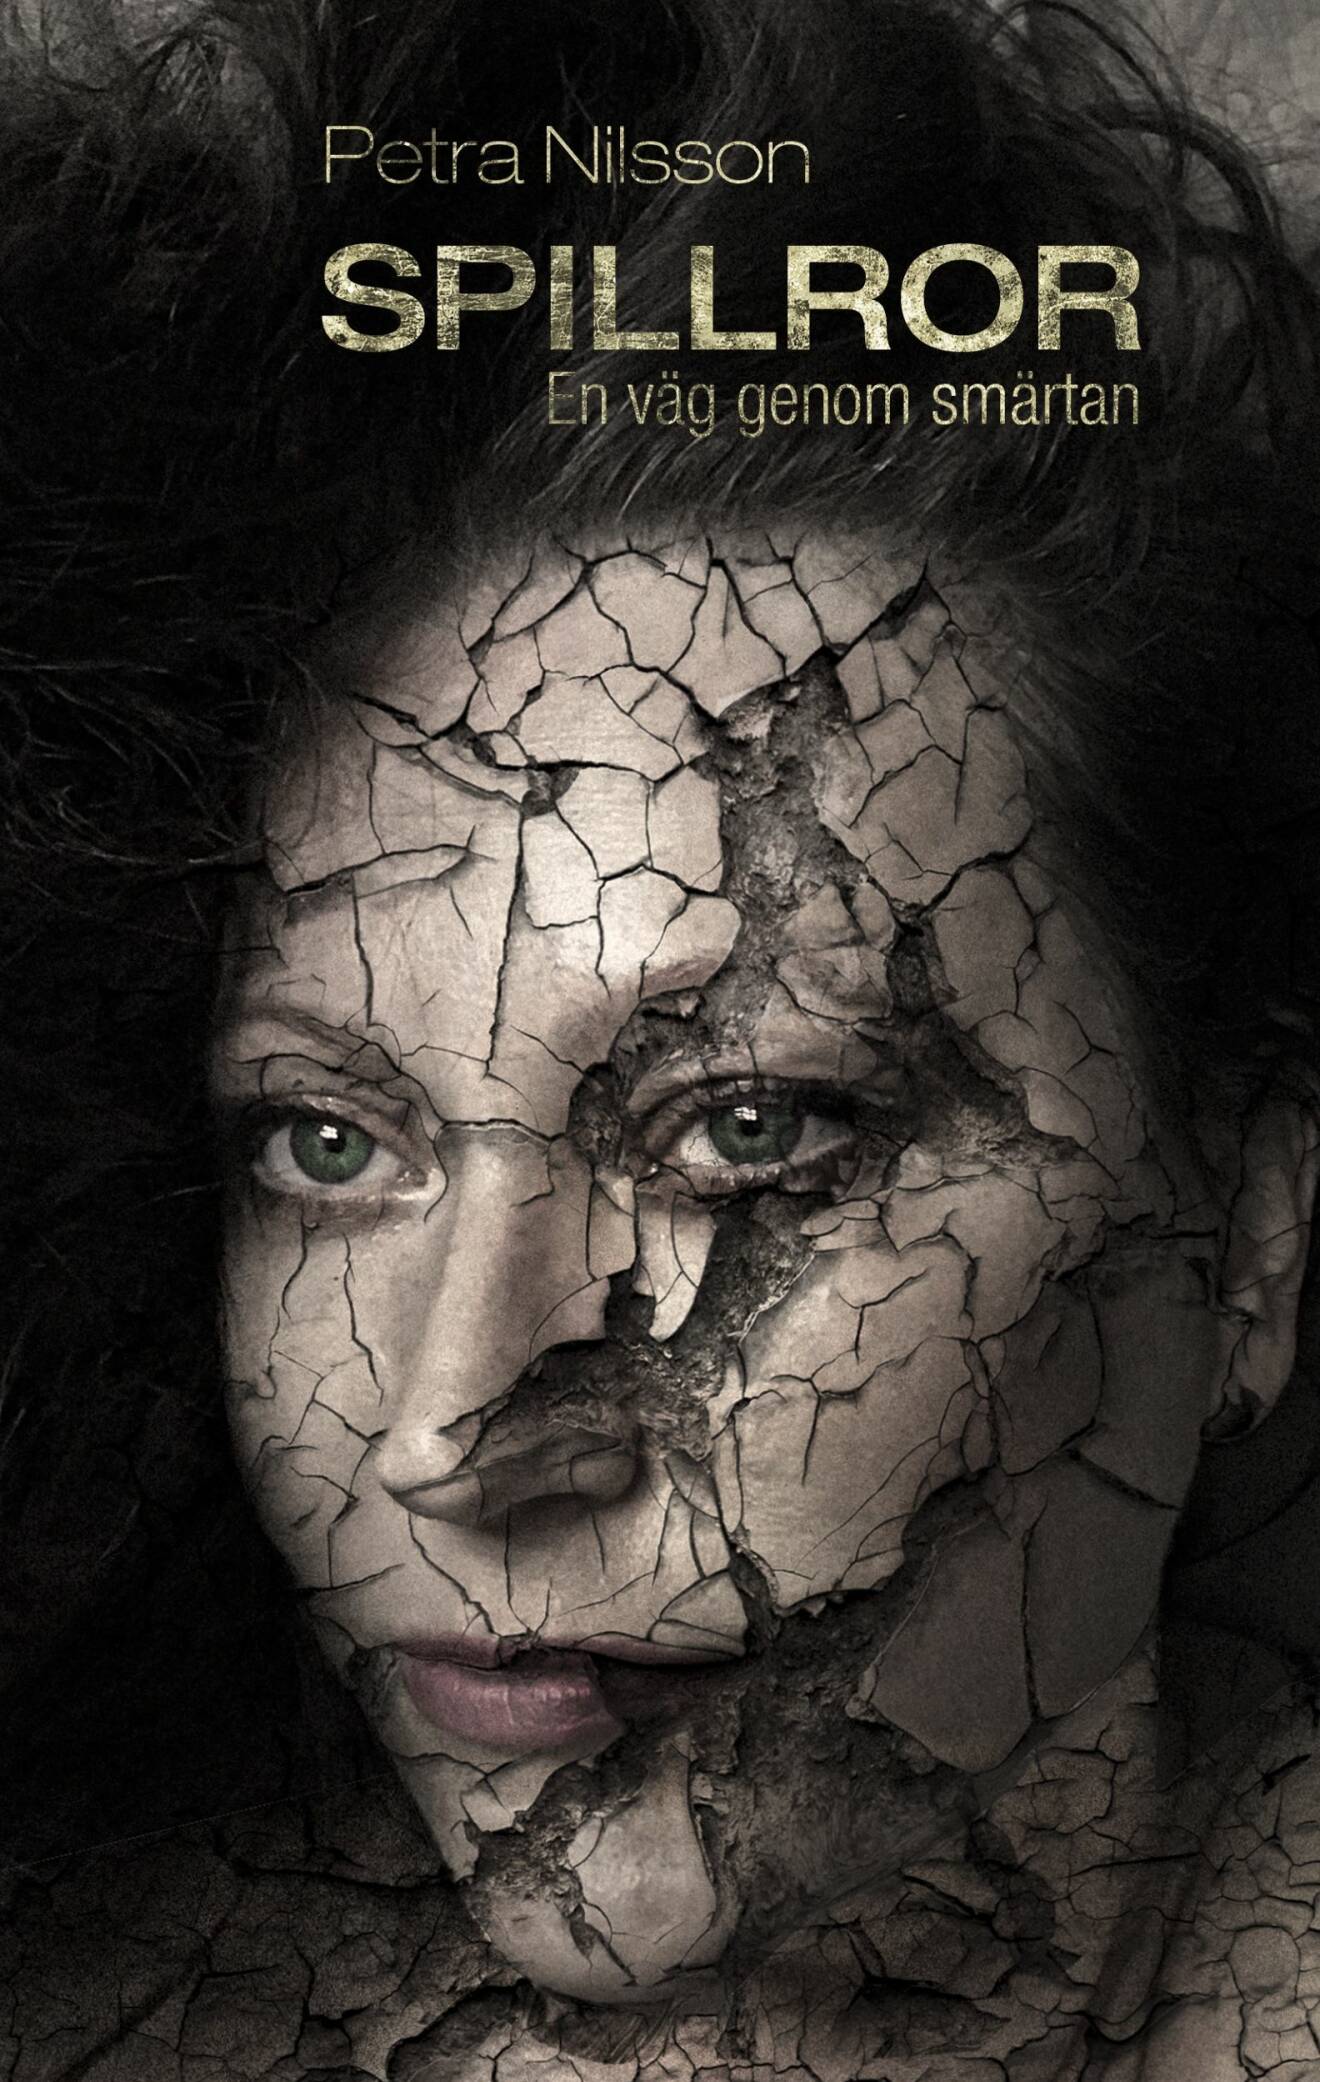 Bild på omslaget till boken Spillror, som synliggör fibromyalgi. På omslaget är ansiktet krackelerat.